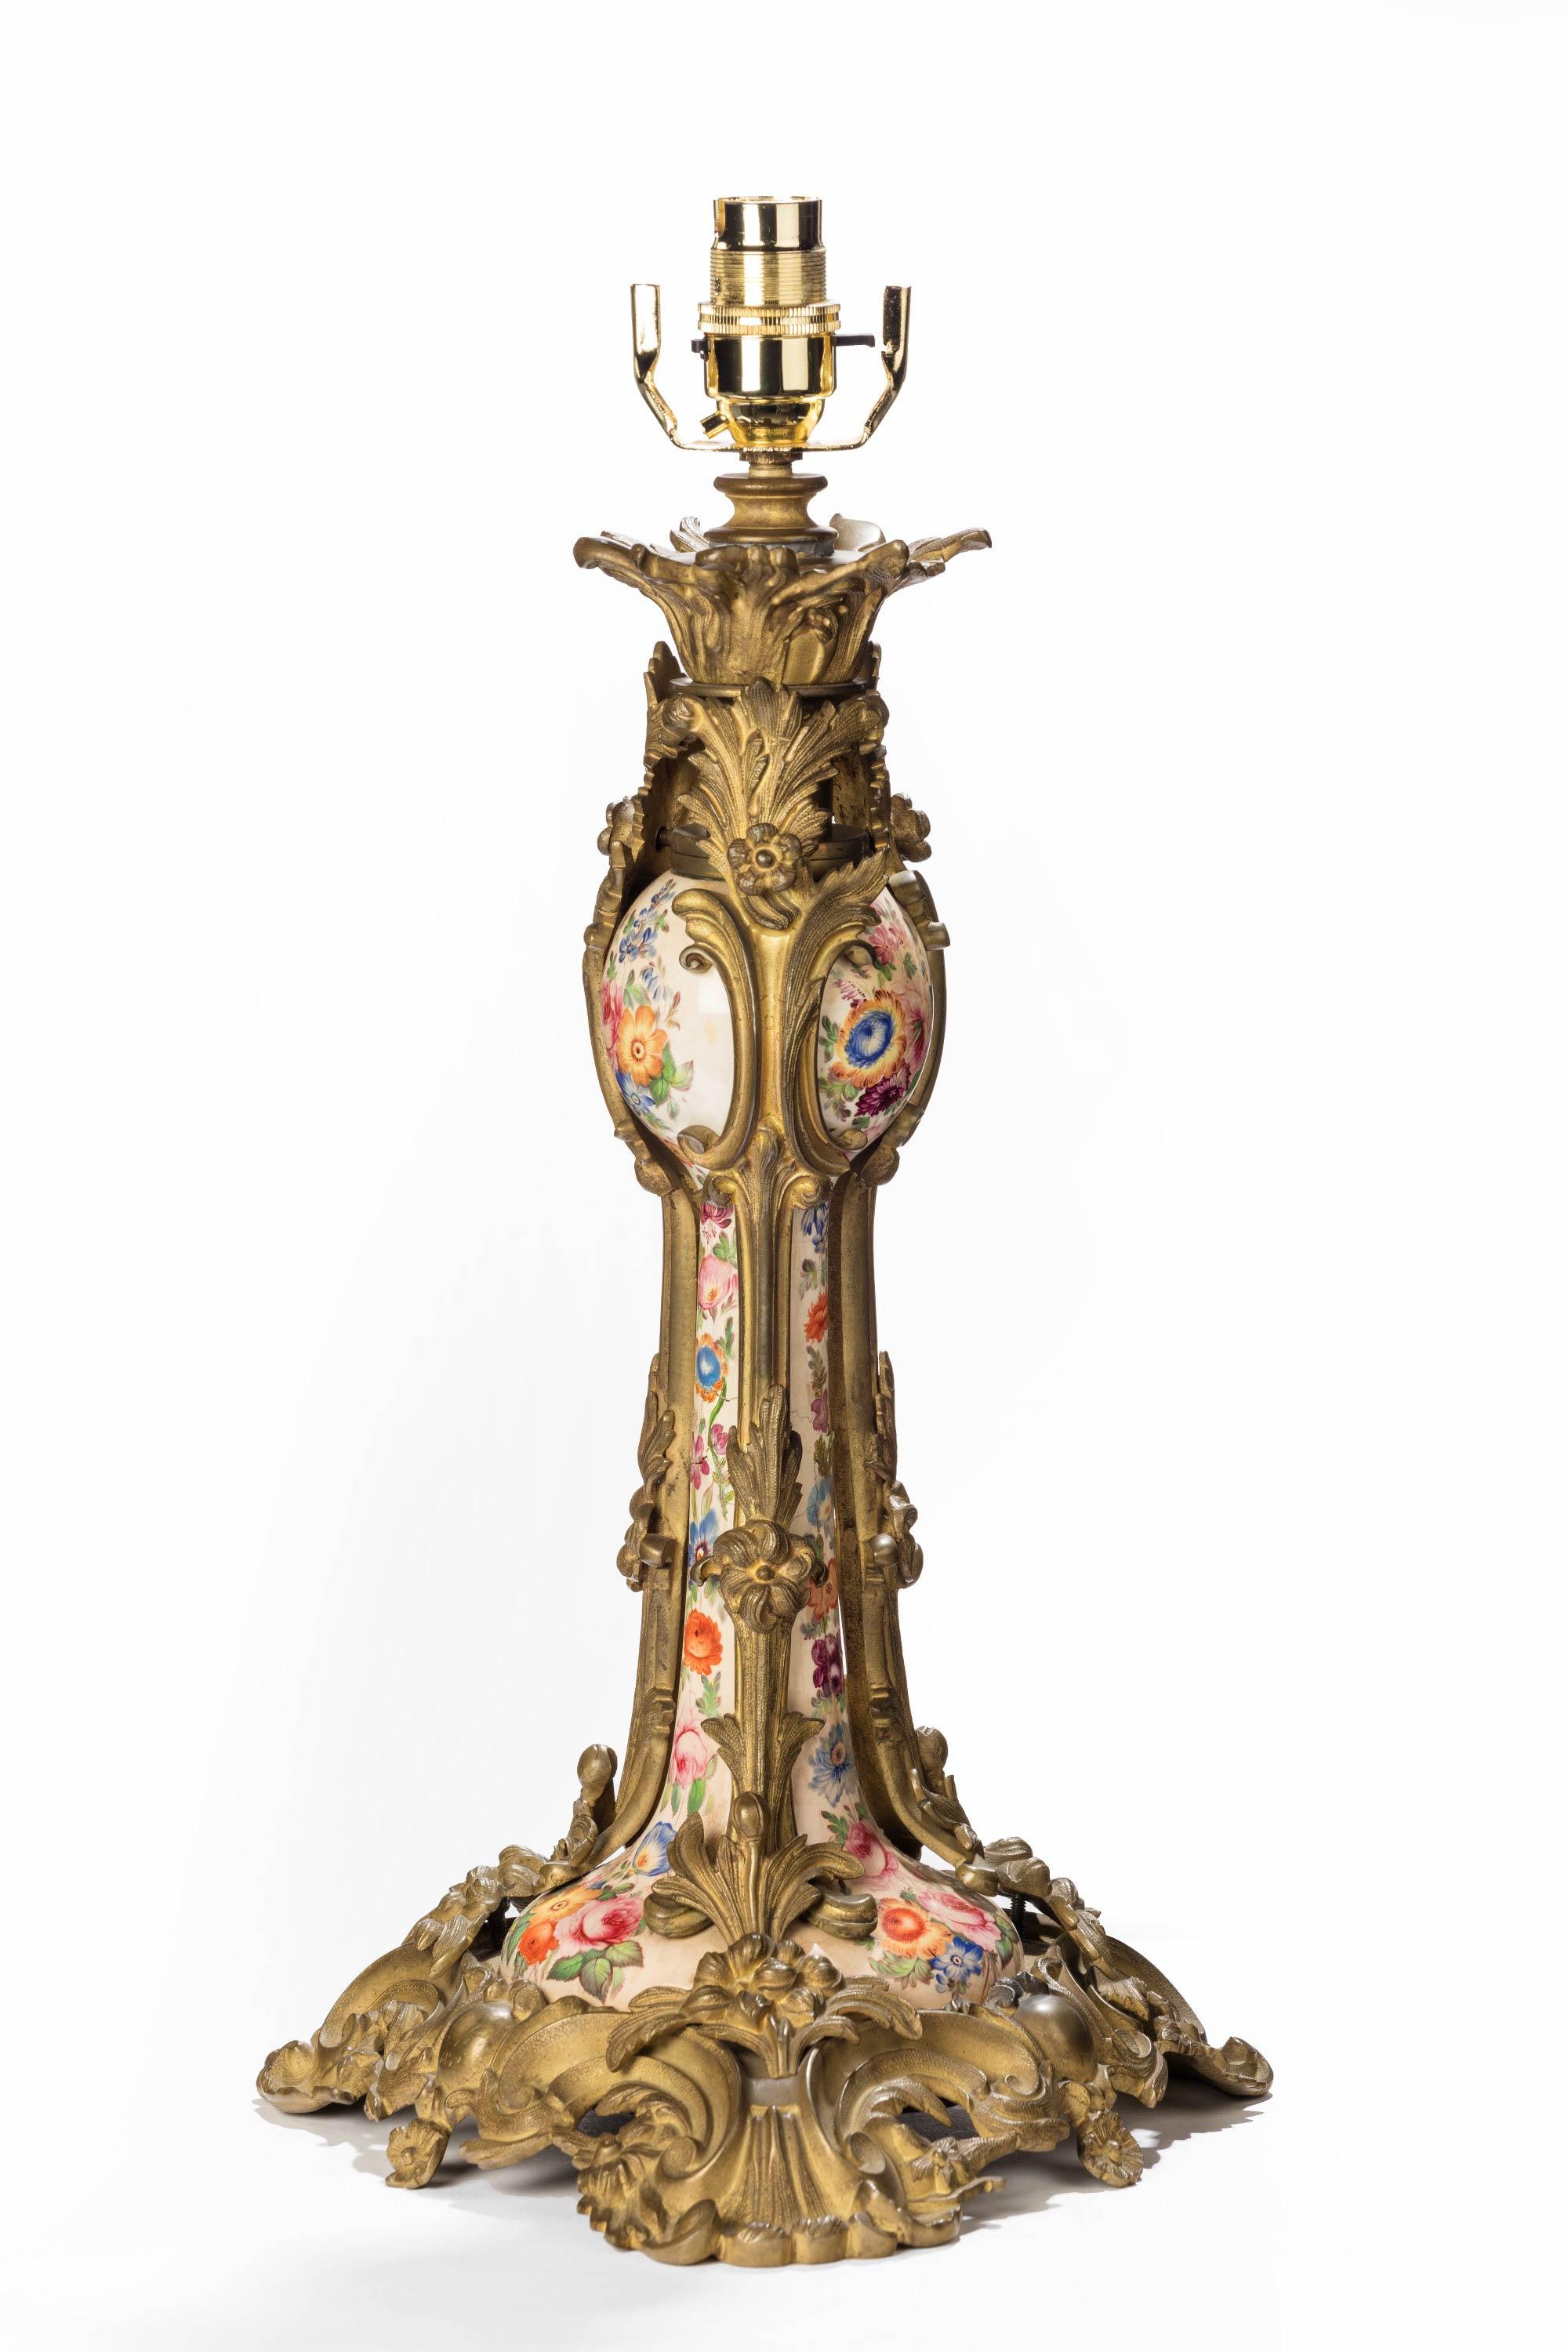 Eine ungewöhnliche Lampe aus vergoldeter Bronze und Porzellan aus dem 19. Jahrhundert in Rokokoform. Ein fein bemaltes Mittelstück aus Porzellan mit Restaurierungen. Von höchst kunstvoller Form und ungewöhnlich in Stil und Qualität. Ursprünglich ein